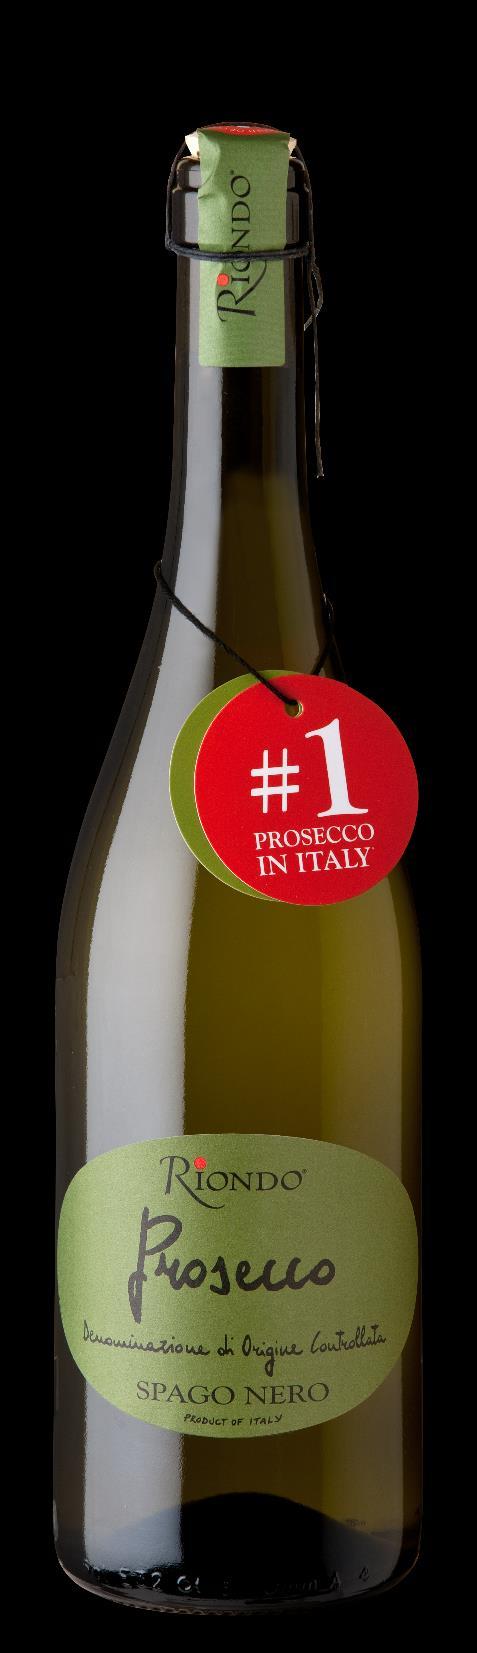 Green Lable Spago Prosecco Frizzante White wine, Frizzante Prosecco D.O.C. Glera, other grapes 10,5% vol 20 g/liter 5.